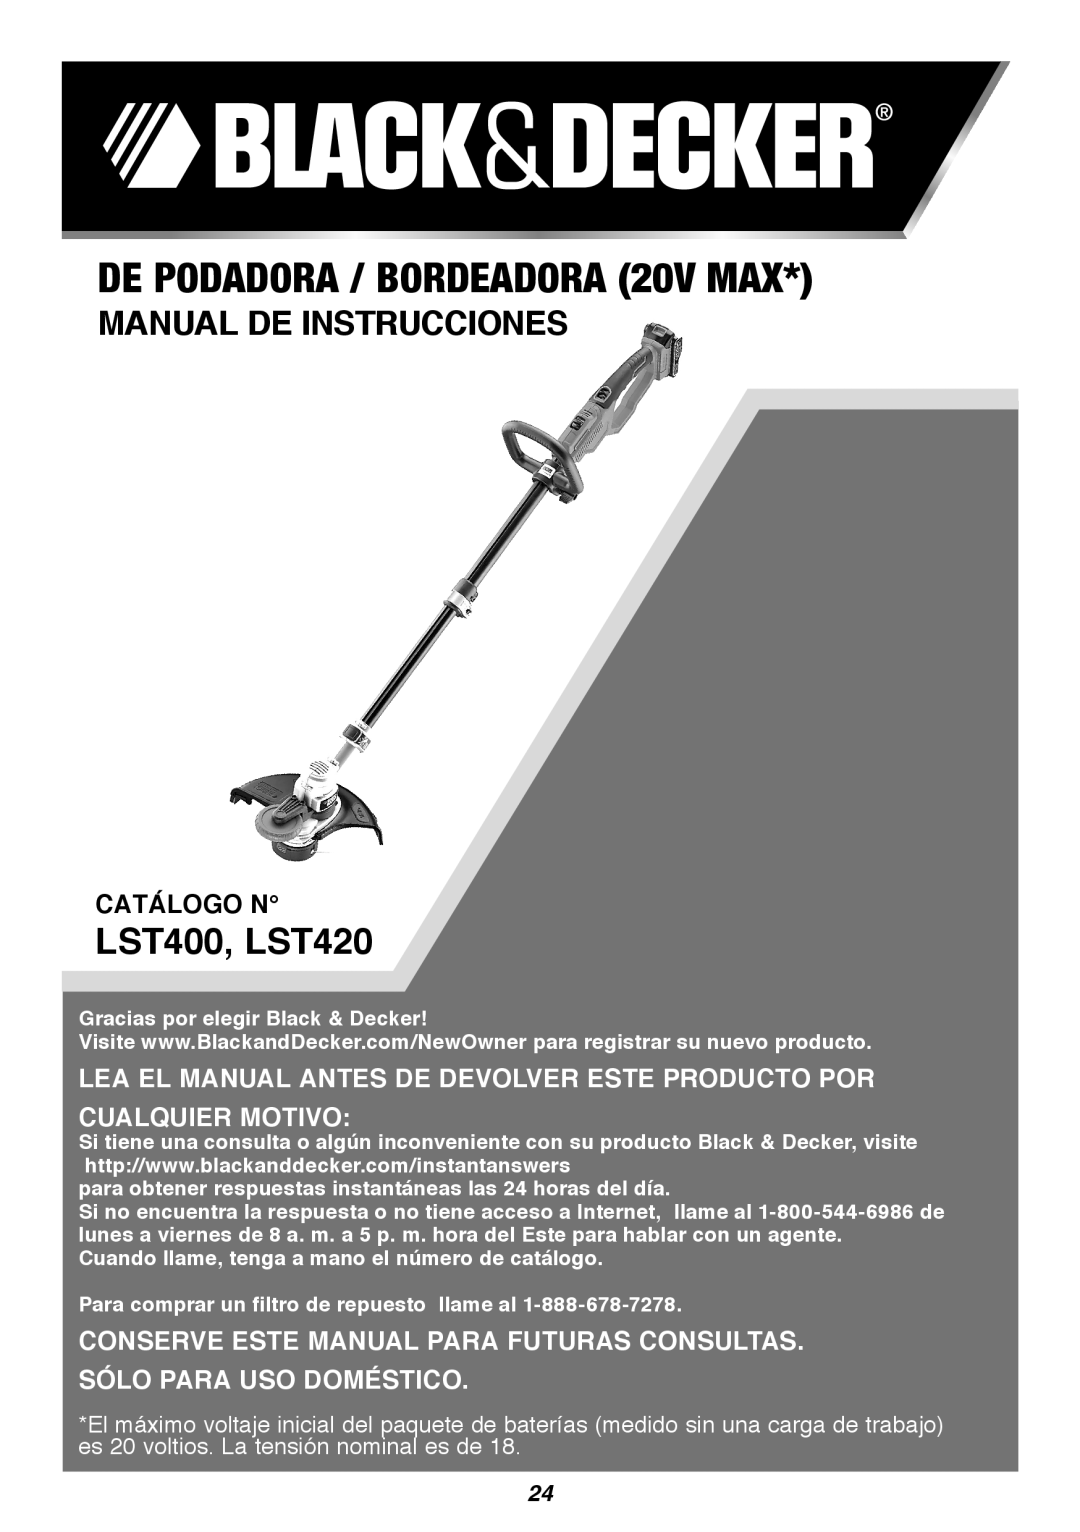 Black & Decker instruction manual DE PODADORA / BORDEADORA 20V MAX, Manual De Instrucciones, Catálogo N, LST400, LST420 